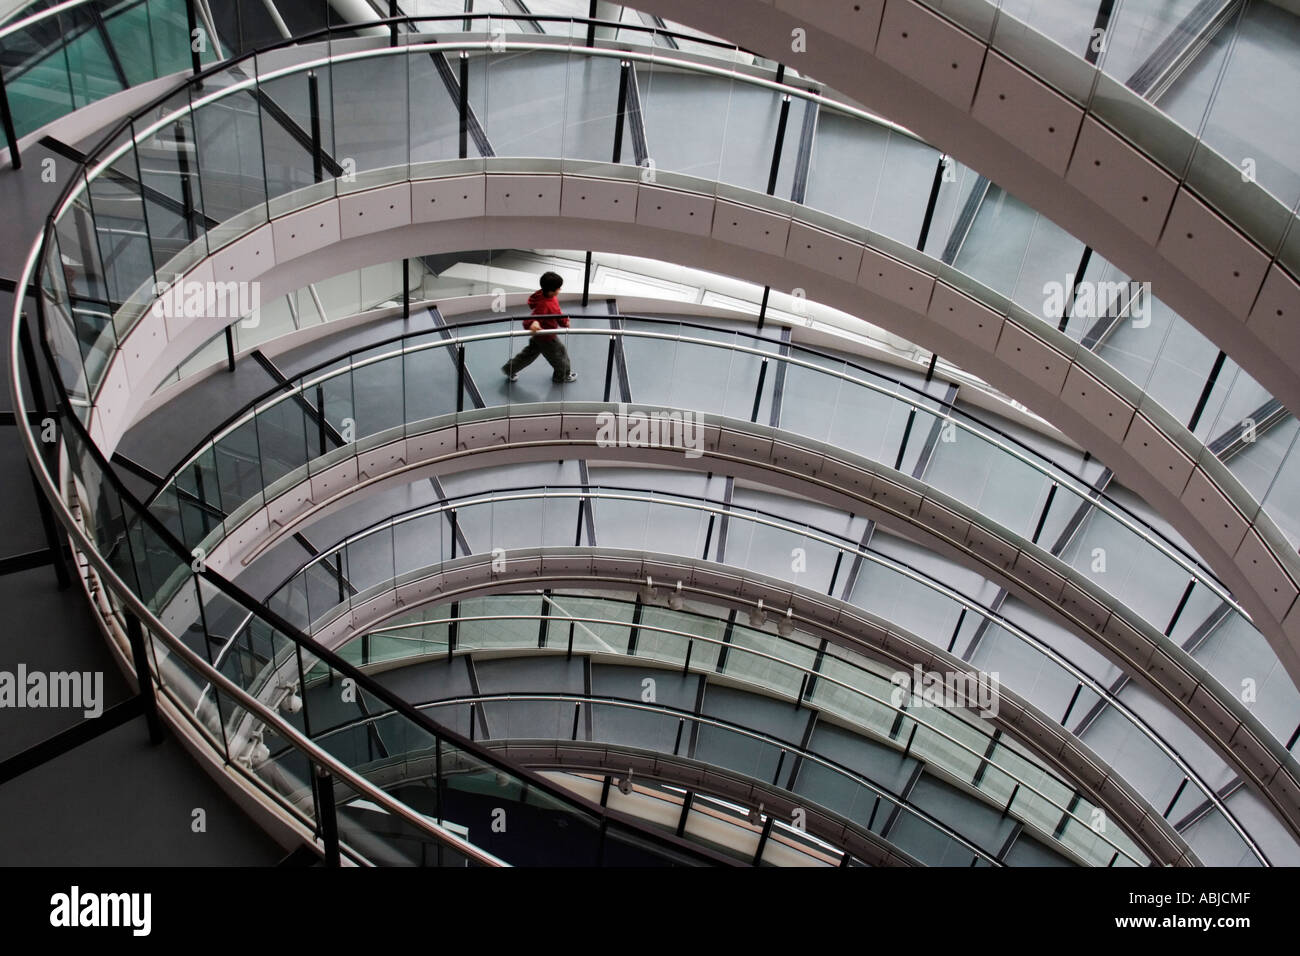 Petit garçon en rouge en bas de l'escalier tournant de cavalier de l'hôtel de ville de Londres, Angleterre, Royaume-Uni Banque D'Images